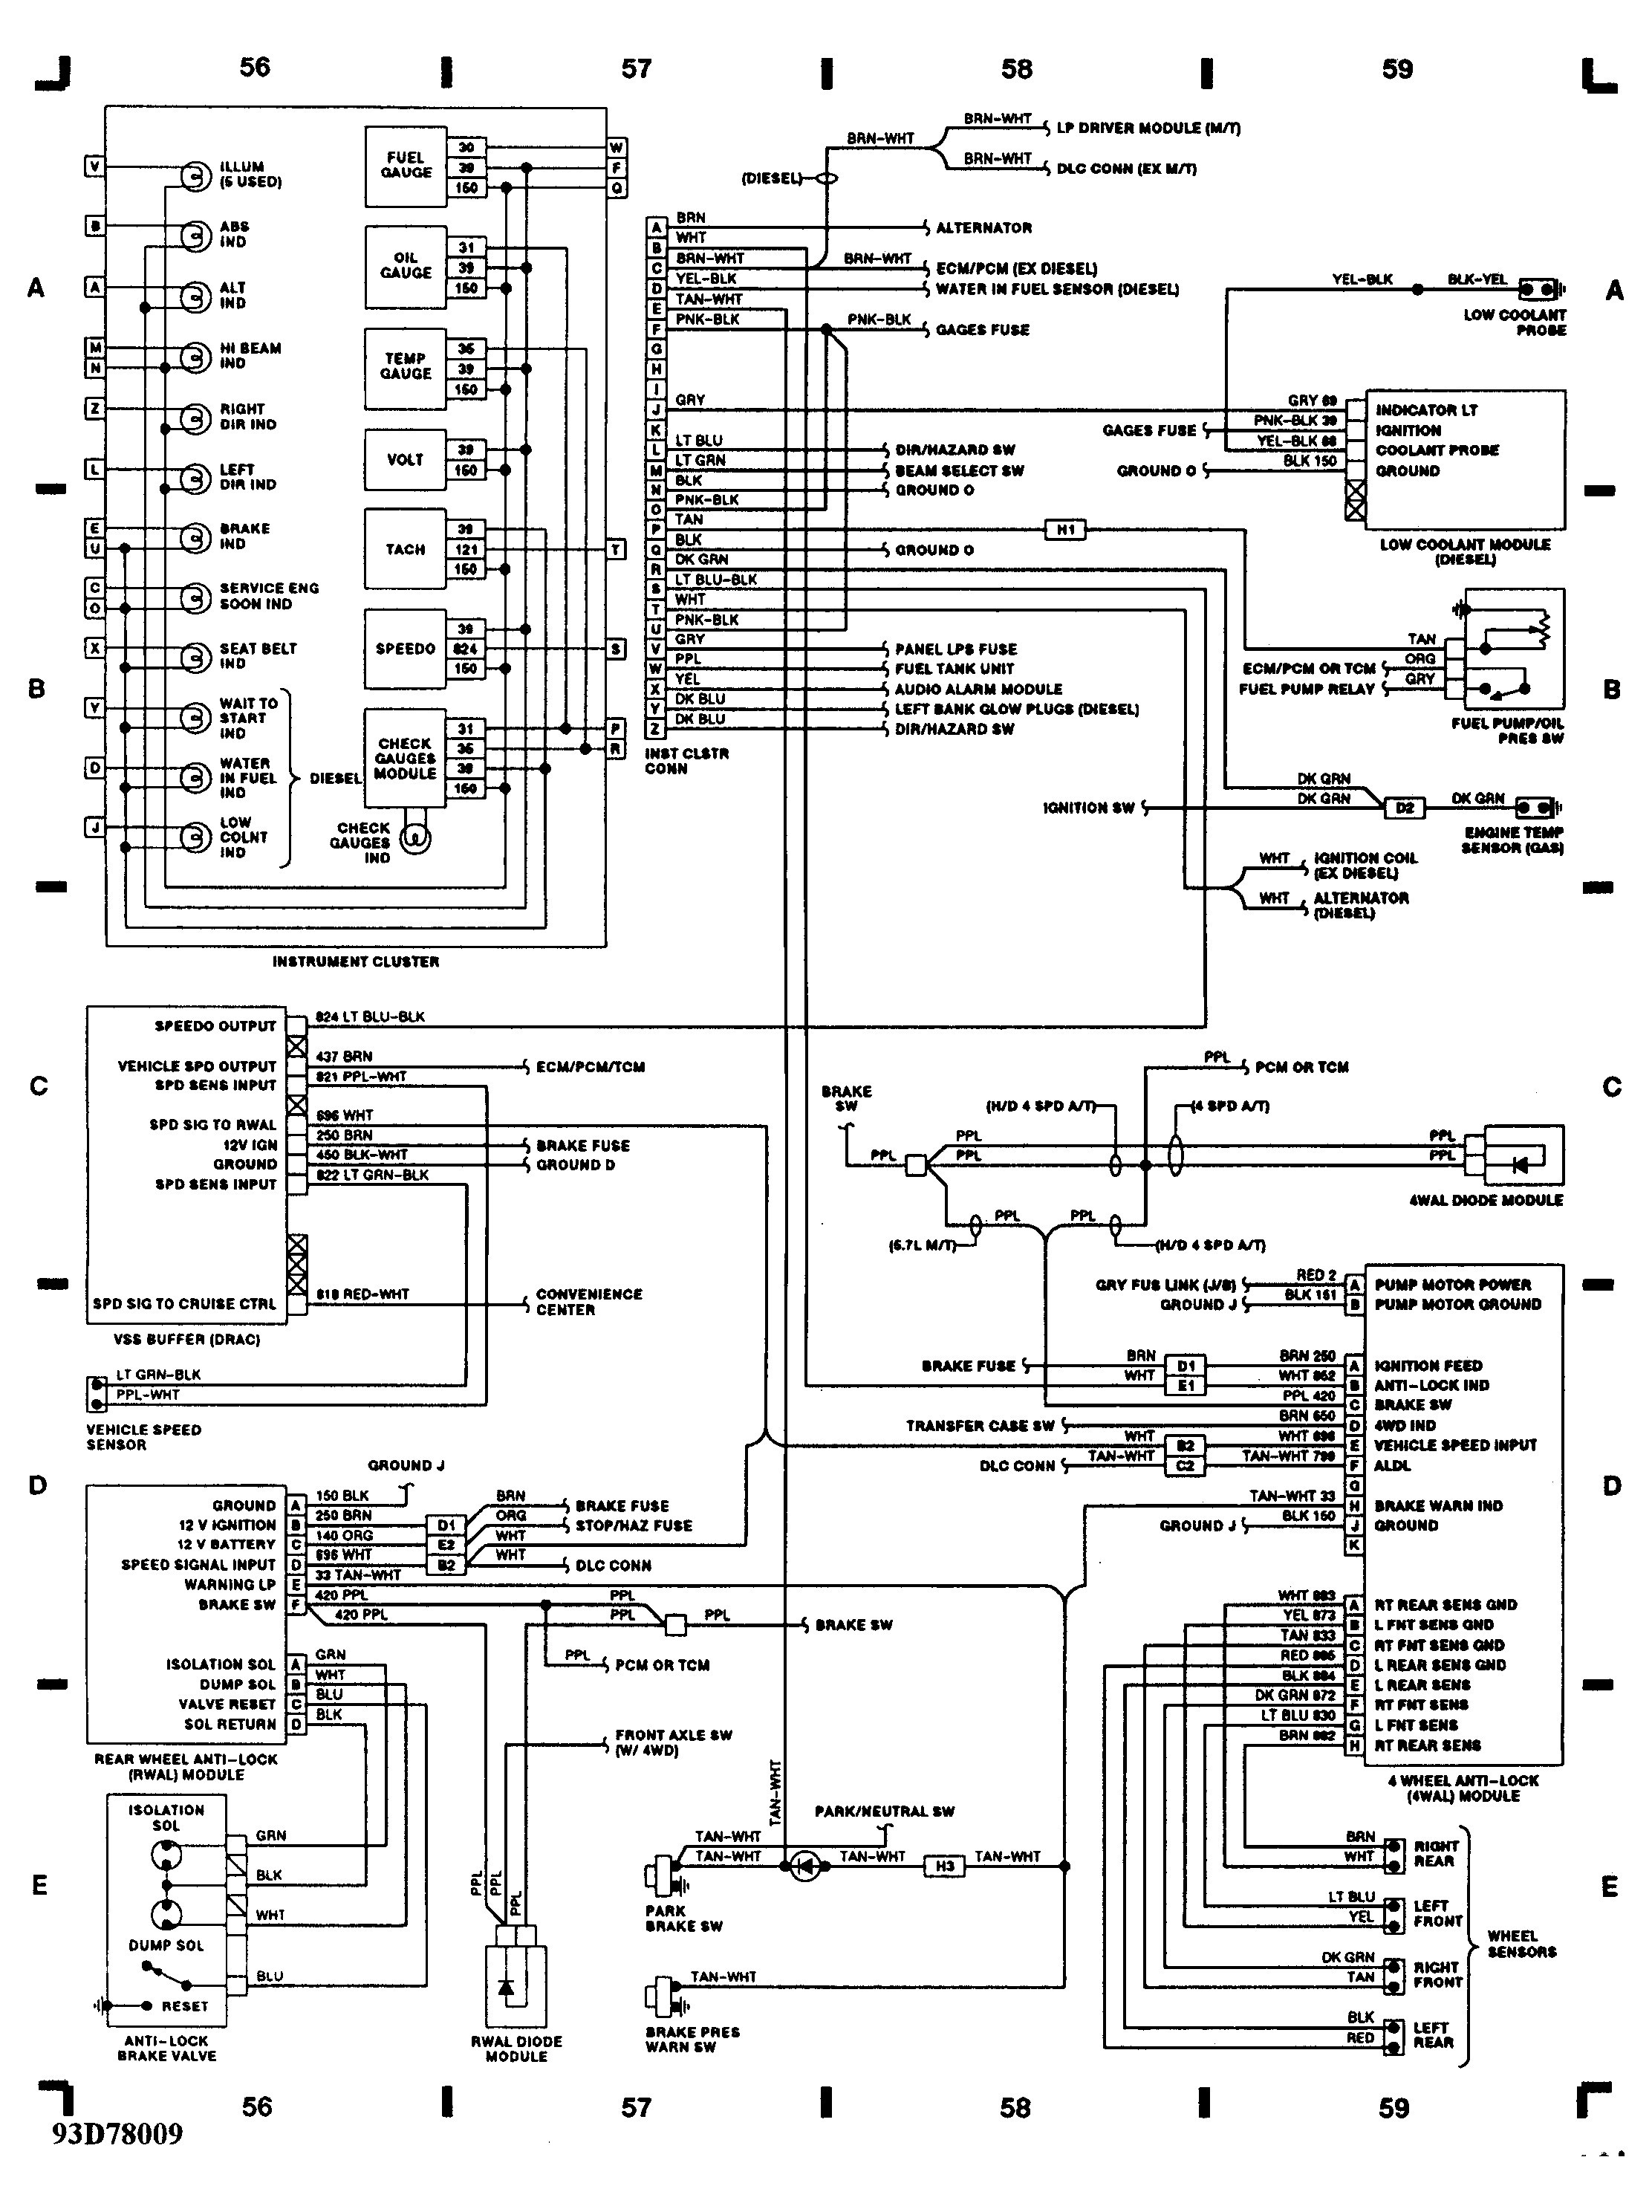 2003 Chevy Trailblazer Engine Diagram 5 7 Vortec Wiring Diagram 4 3l Vortec Engine Diagram Wiring Diagrams Of 2003 Chevy Trailblazer Engine Diagram